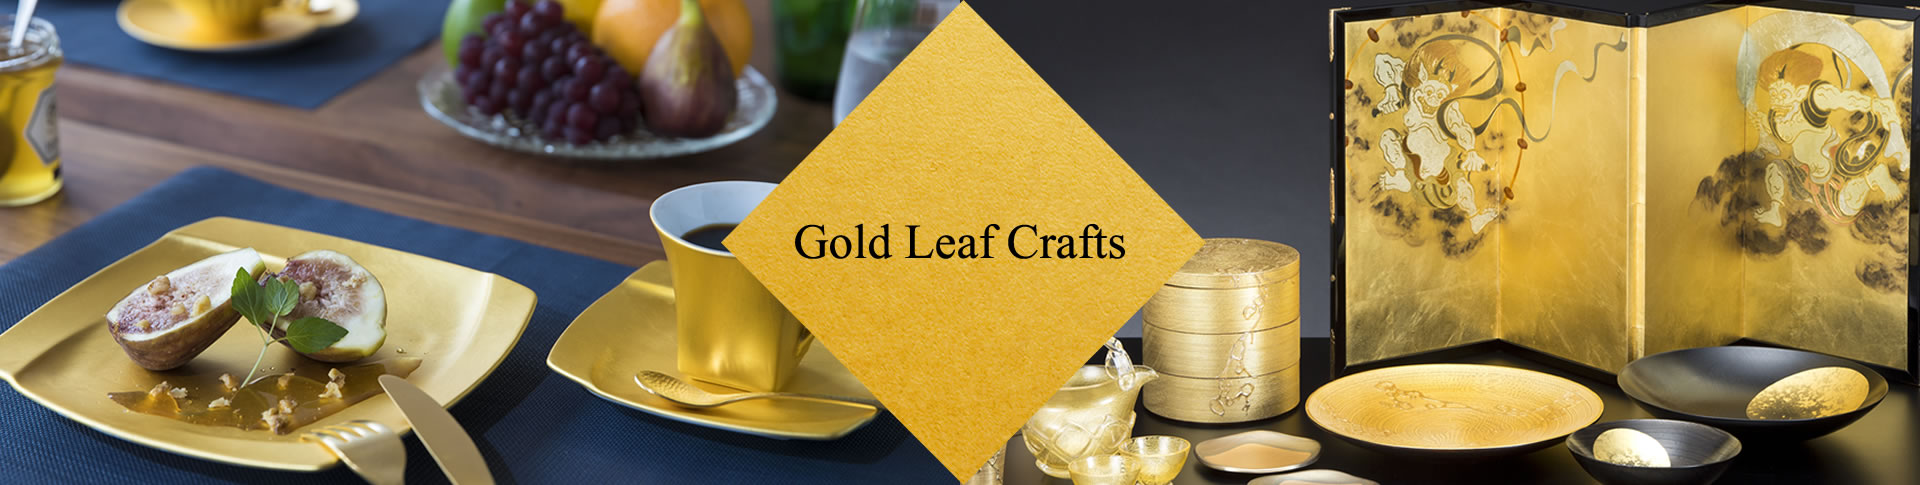 Gold Leaf Crafts